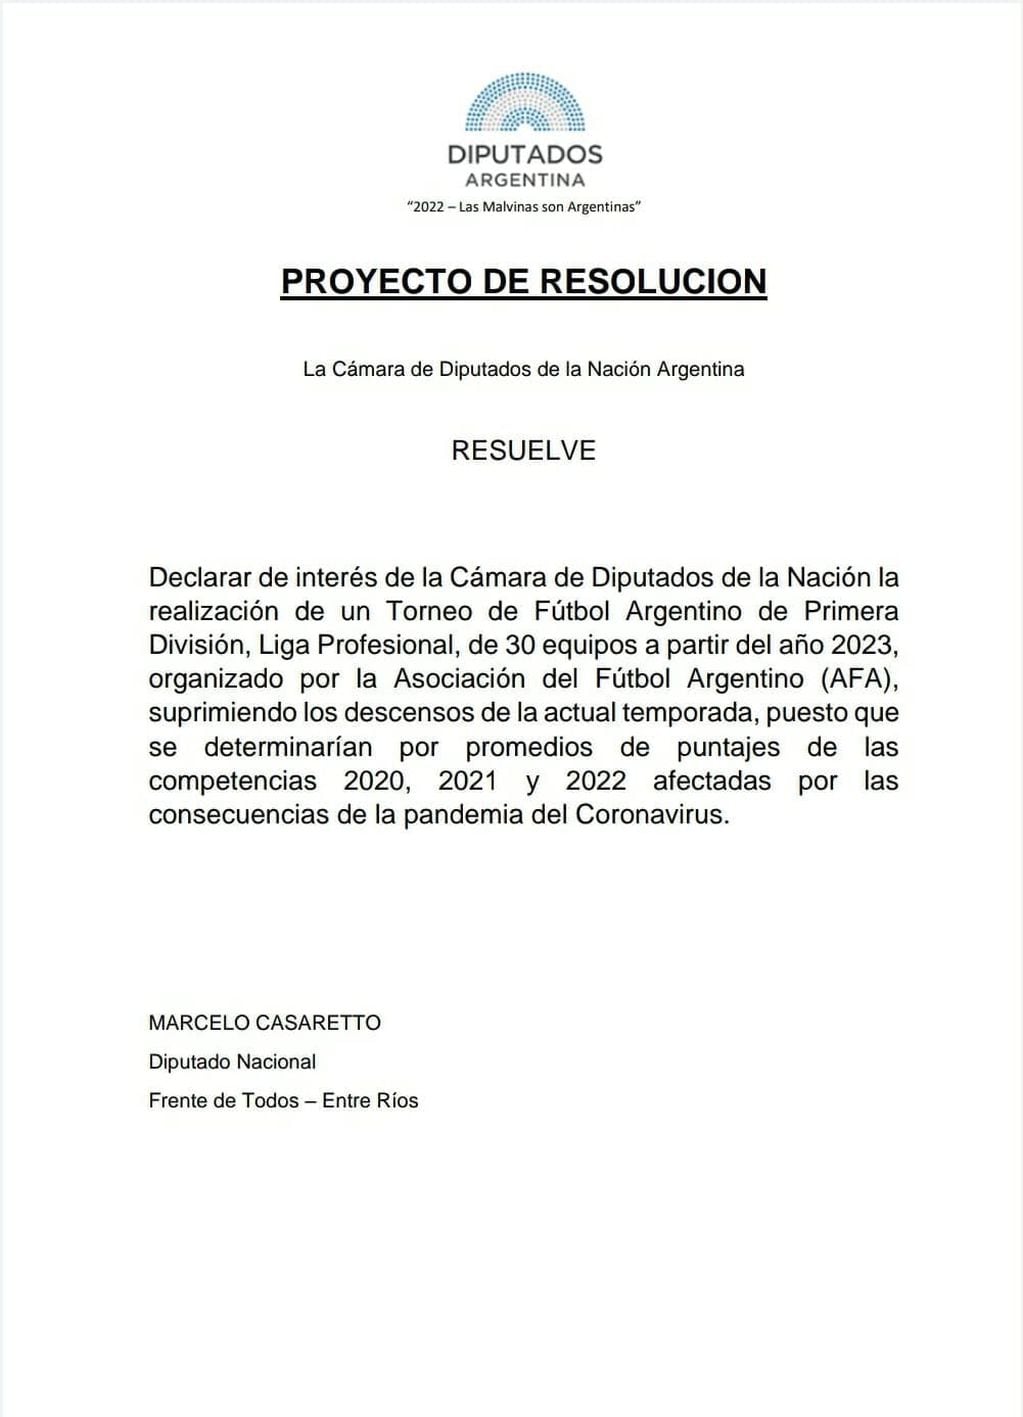 Diputado Nacional Marcelo Casaretto pidió que la Afa suspenda los descensos.